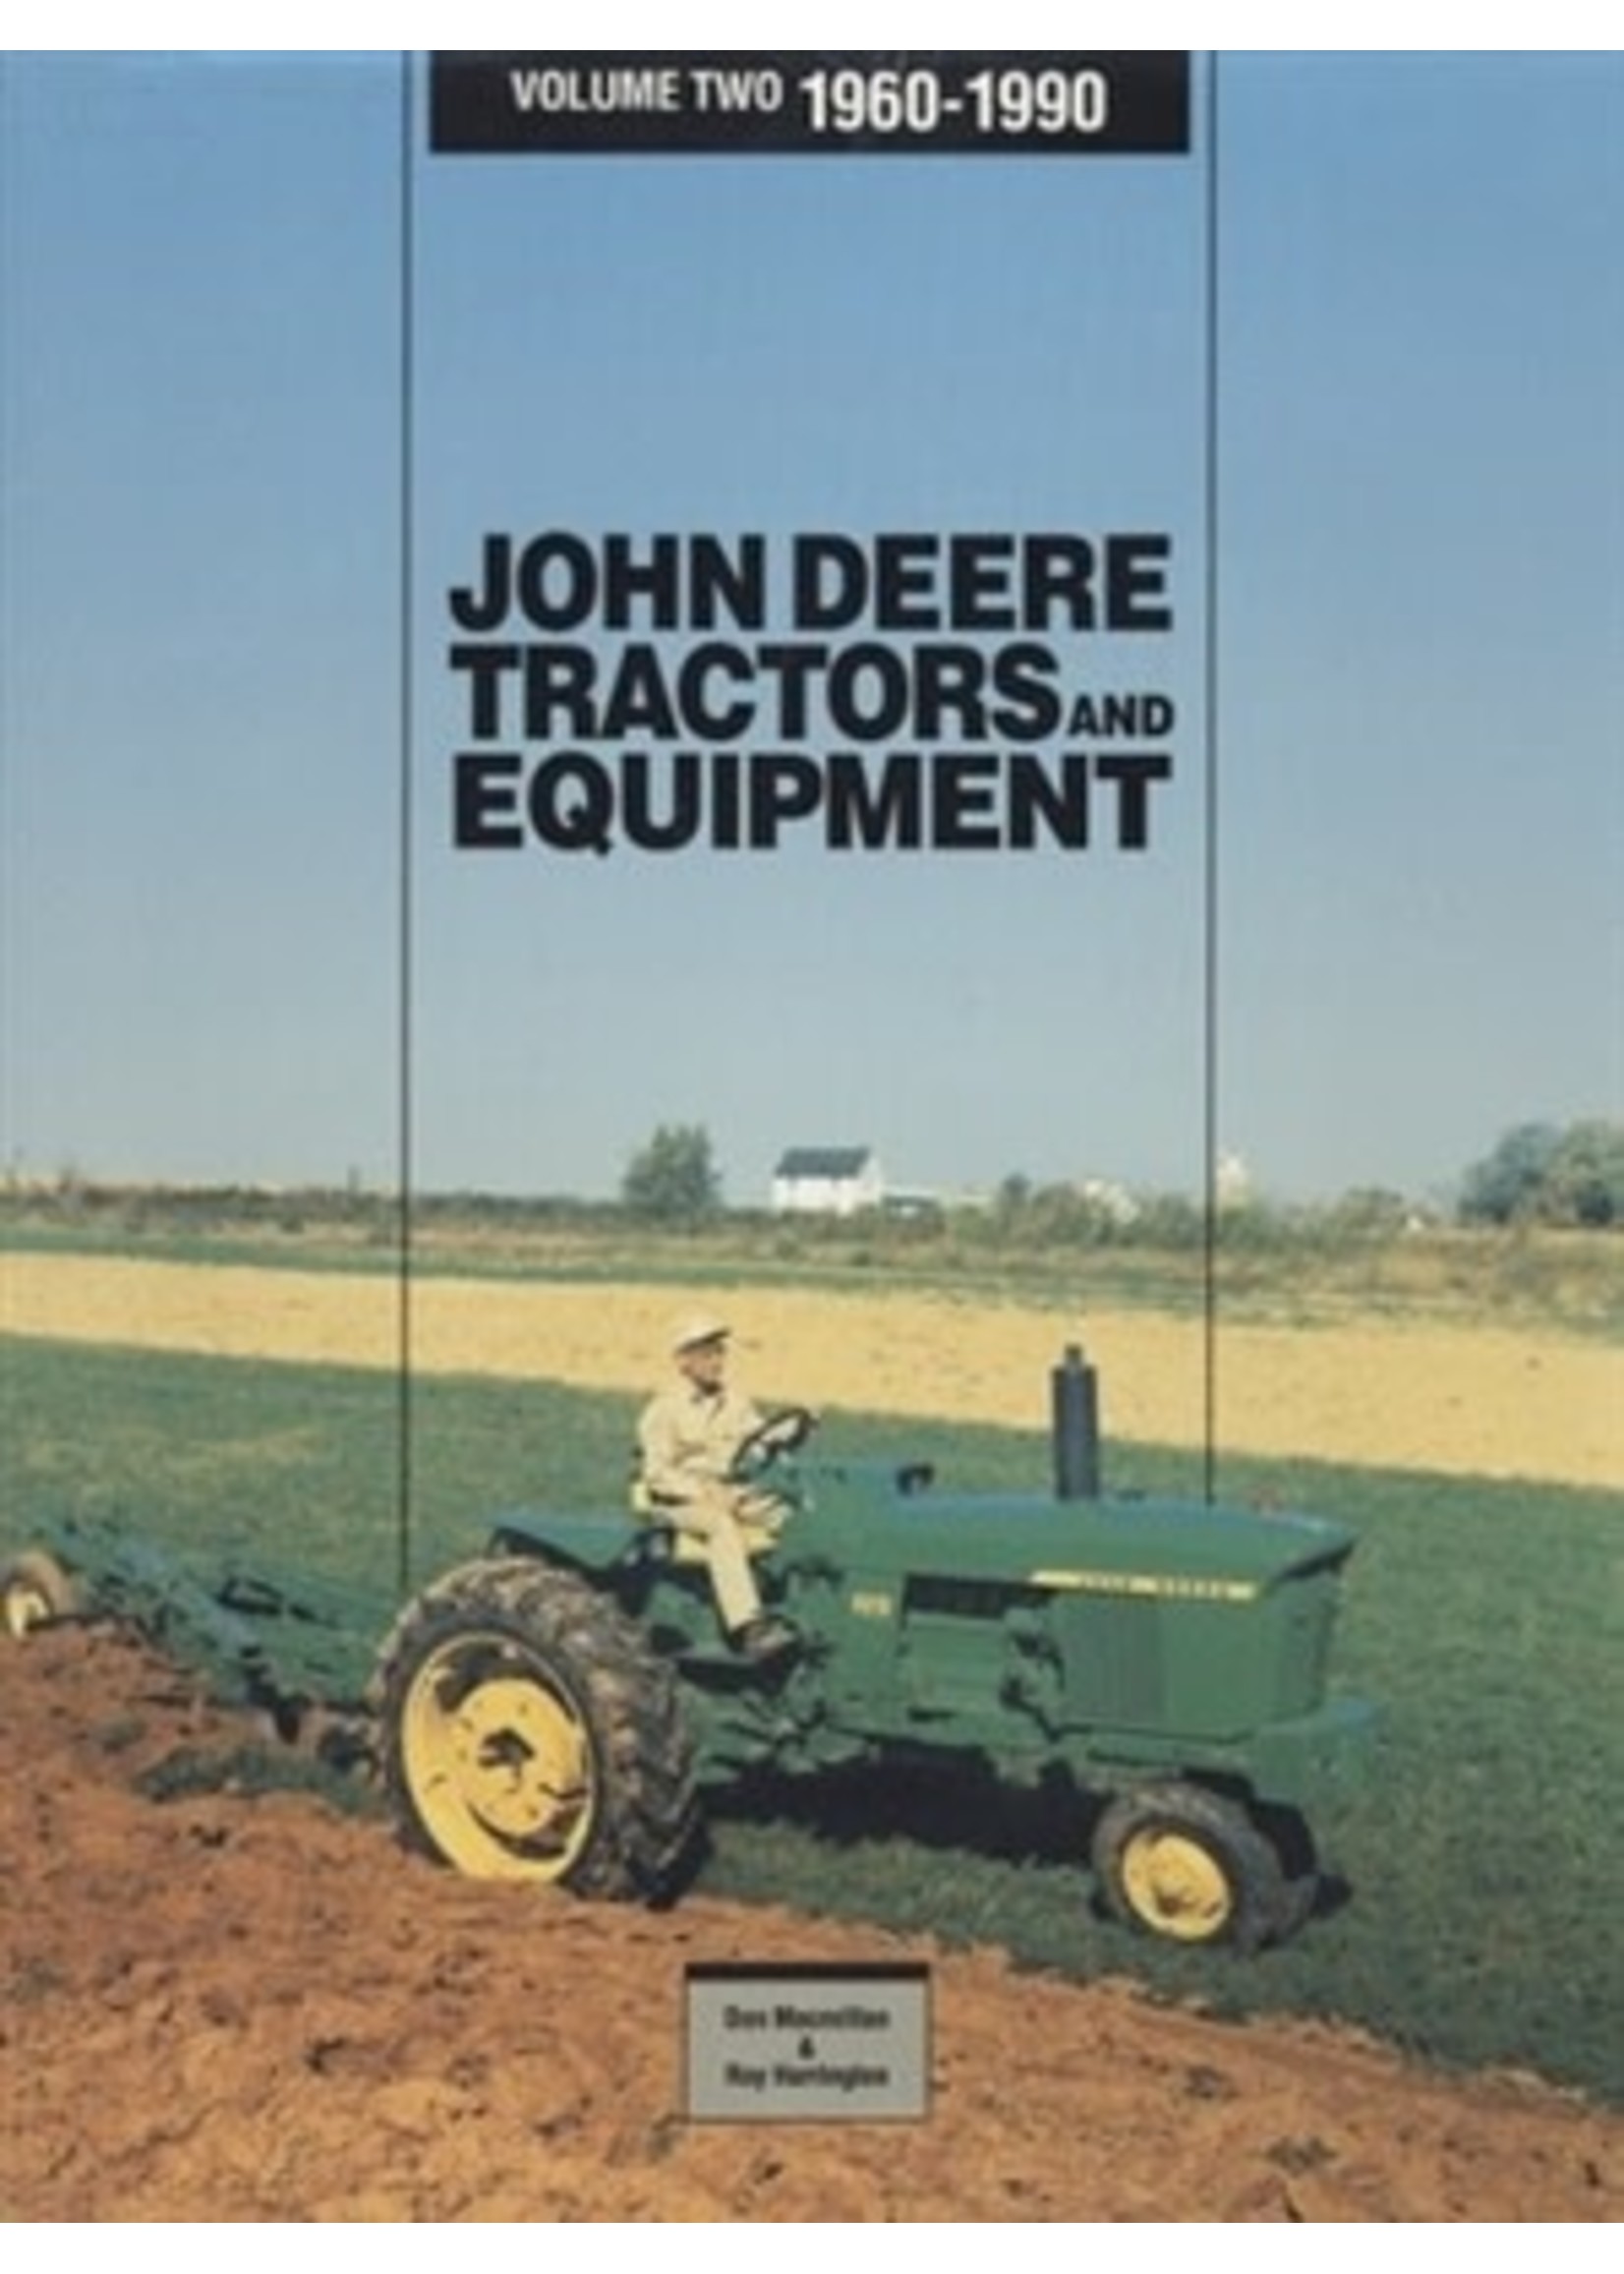 John Deere Tractors & Equipment Vol. Two